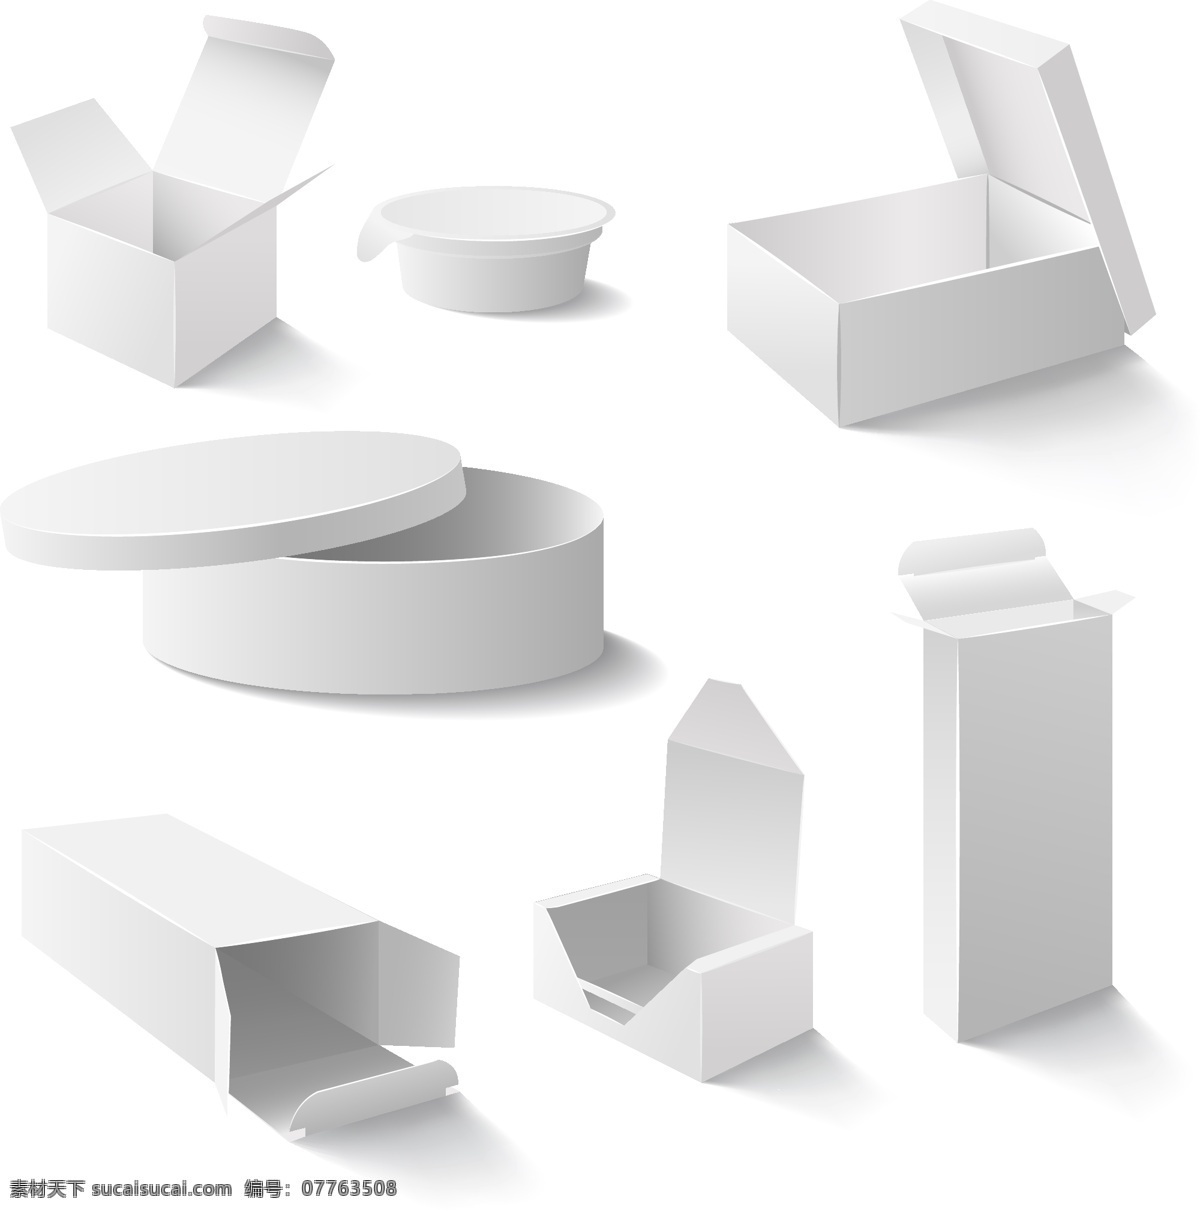 灰色 包装 盒子 包装盒 灰色盒子 圆形盒子 长方形盒子 正方形盒子 白色